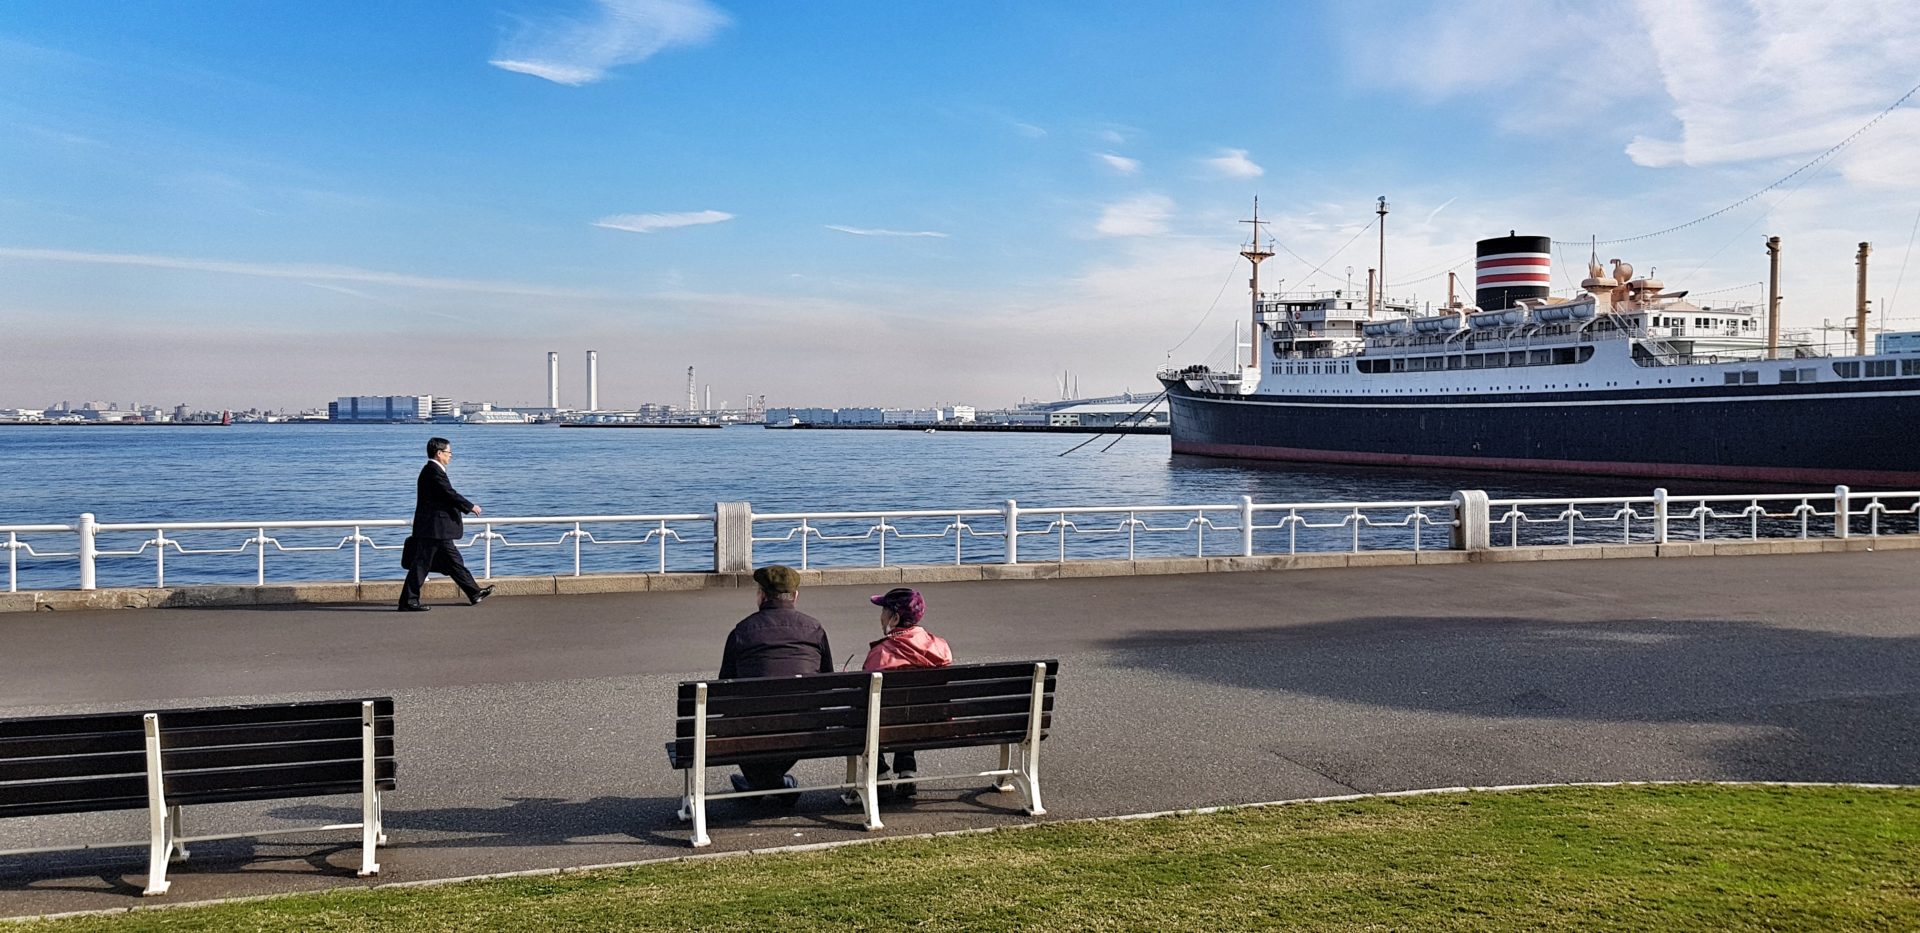 Dampfschiff an der Hafenfront von Yokohama, Japan.